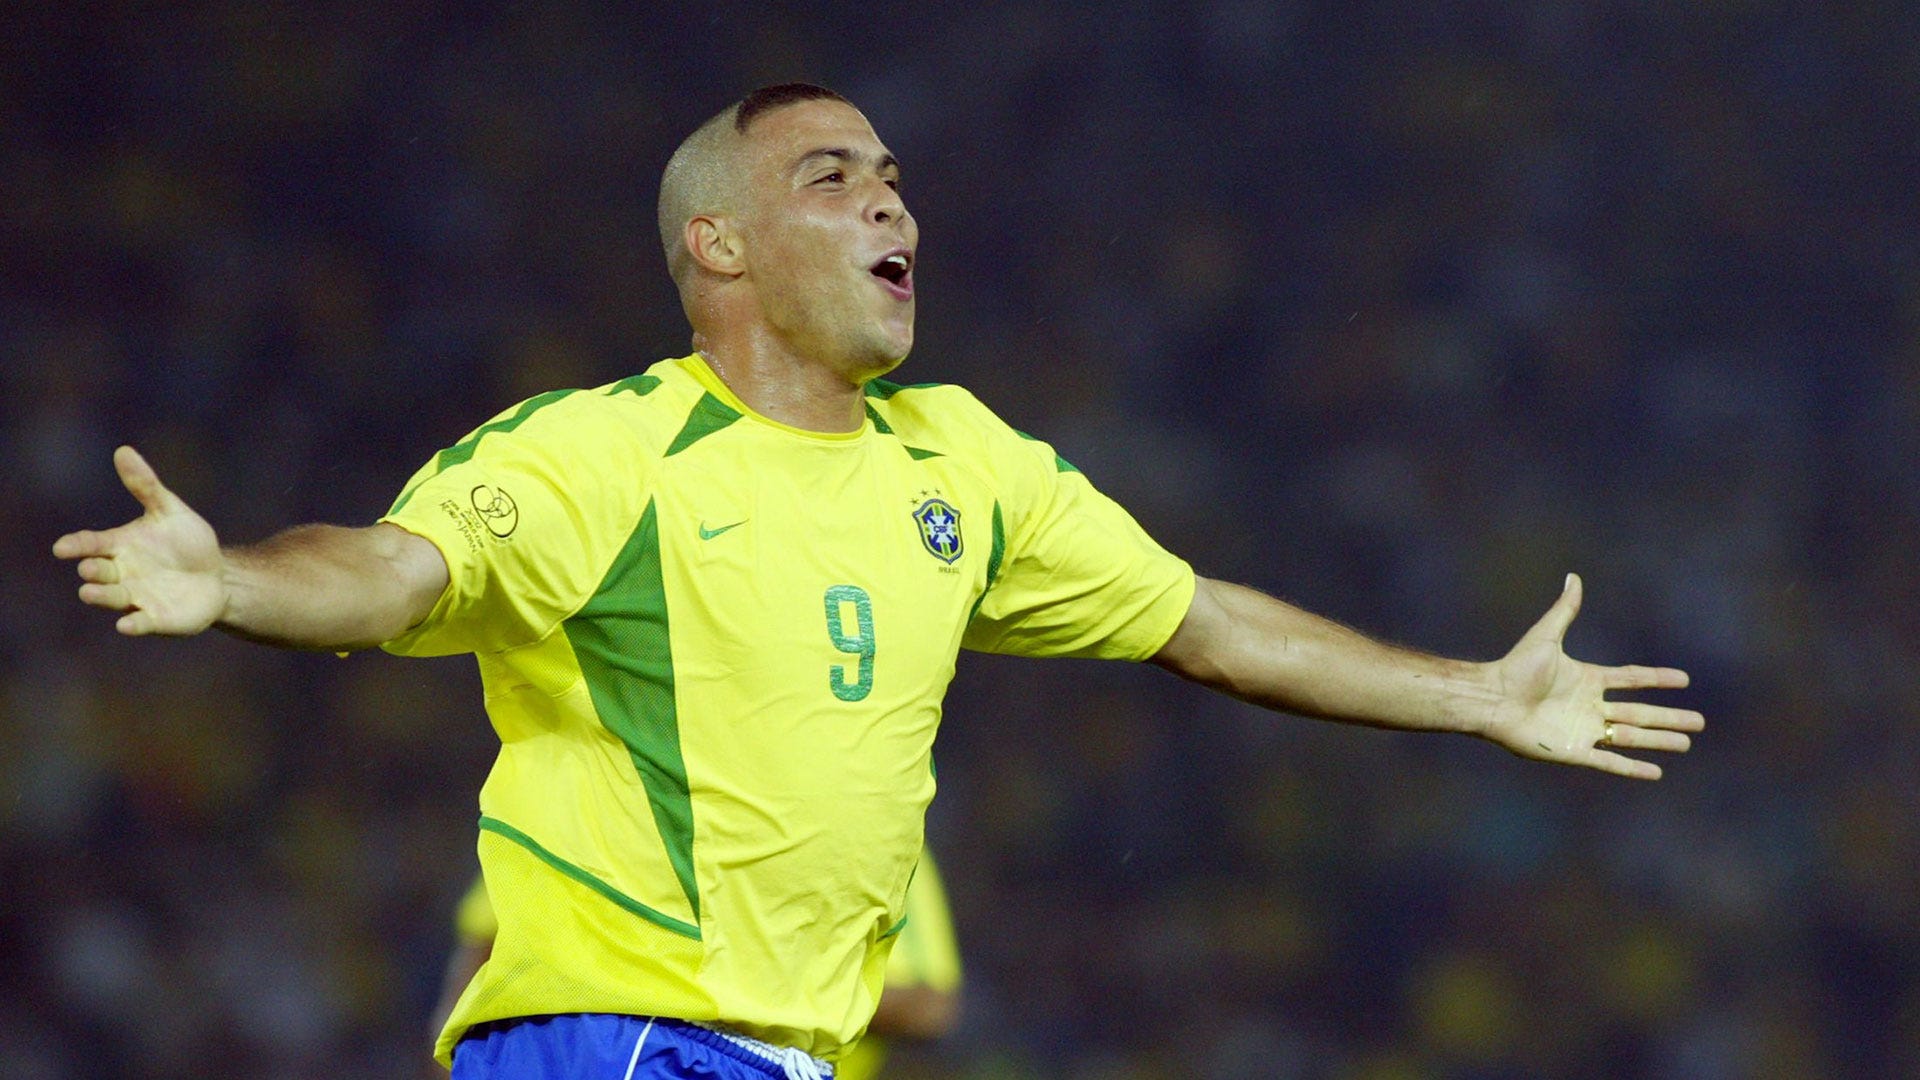 Ronaldo Nazario World Cups: Nếu bạn yêu thích bóng đá và các giải đấu lớn thì hãy xem hình ảnh về Ronaldo Nazario trong các kỳ World Cups. Anh đã gặt hái được rất nhiều thành công và để lại dấu ấn đậm nét trong lịch sử bóng đá.